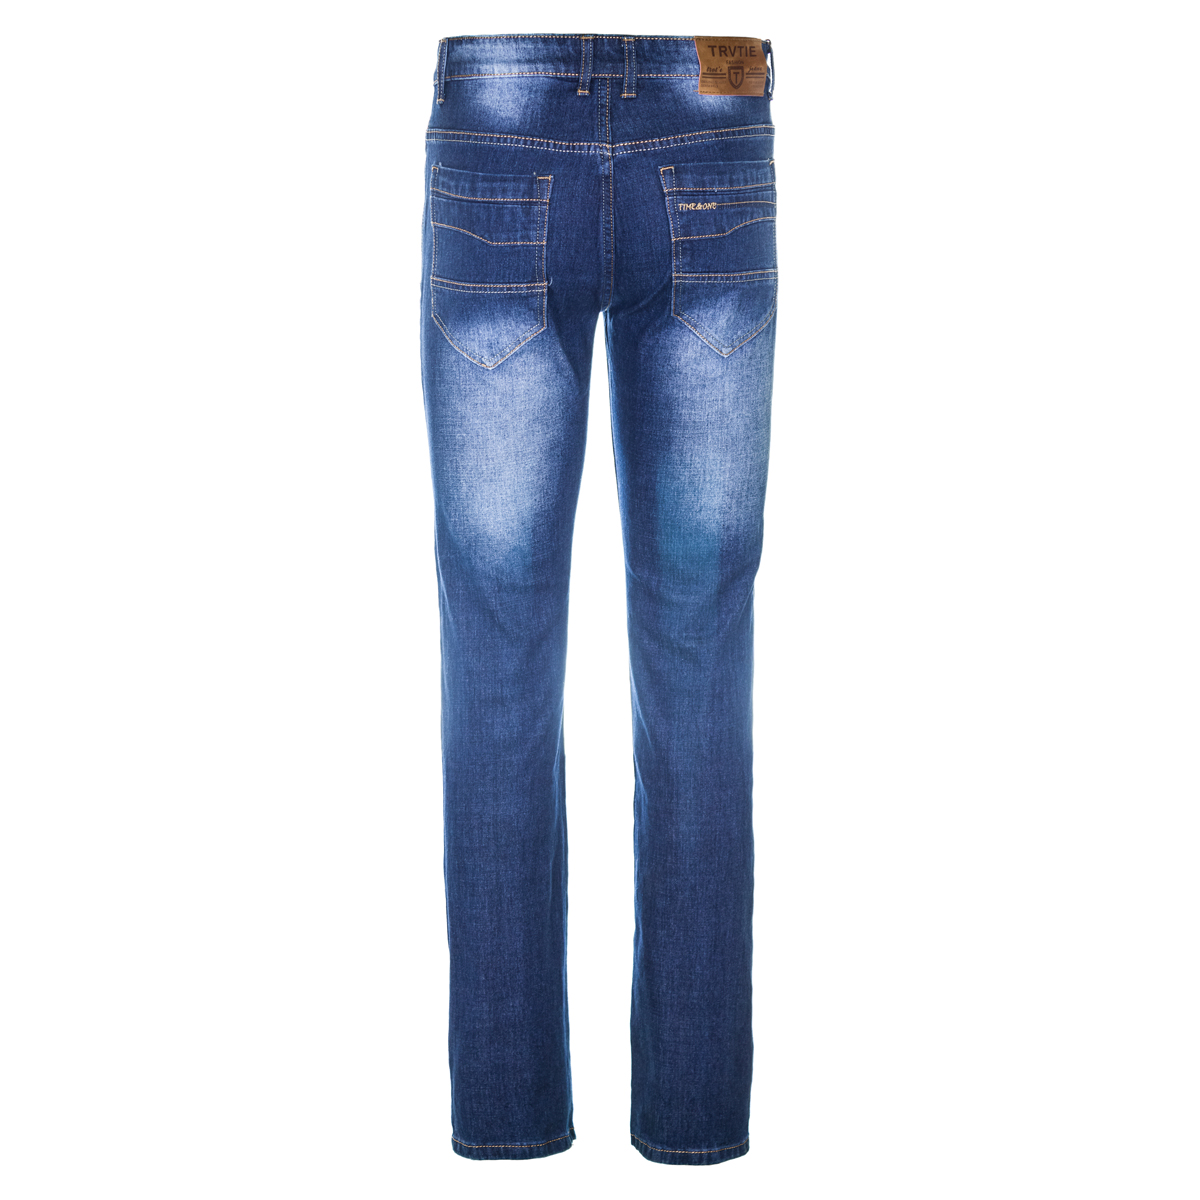 Муж. джинсы арт. 12-0156 Синий р. 30 Китай, размер 30 - фото 3